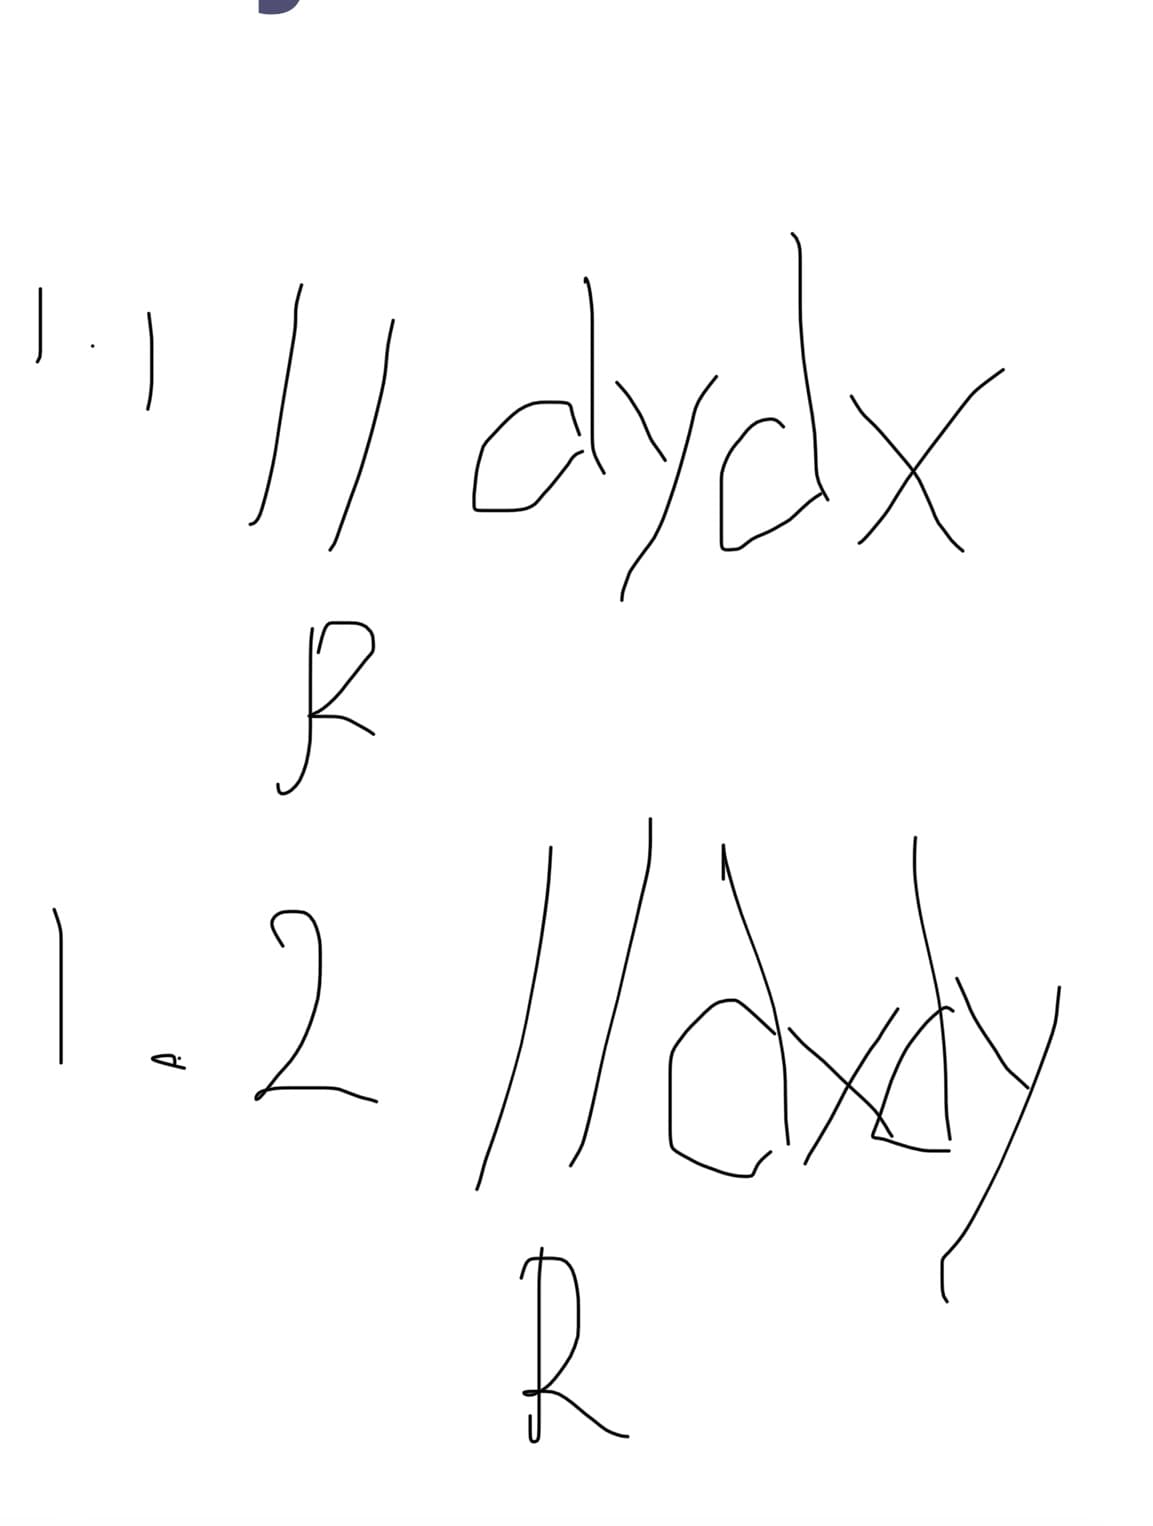 / dydx
1.2
